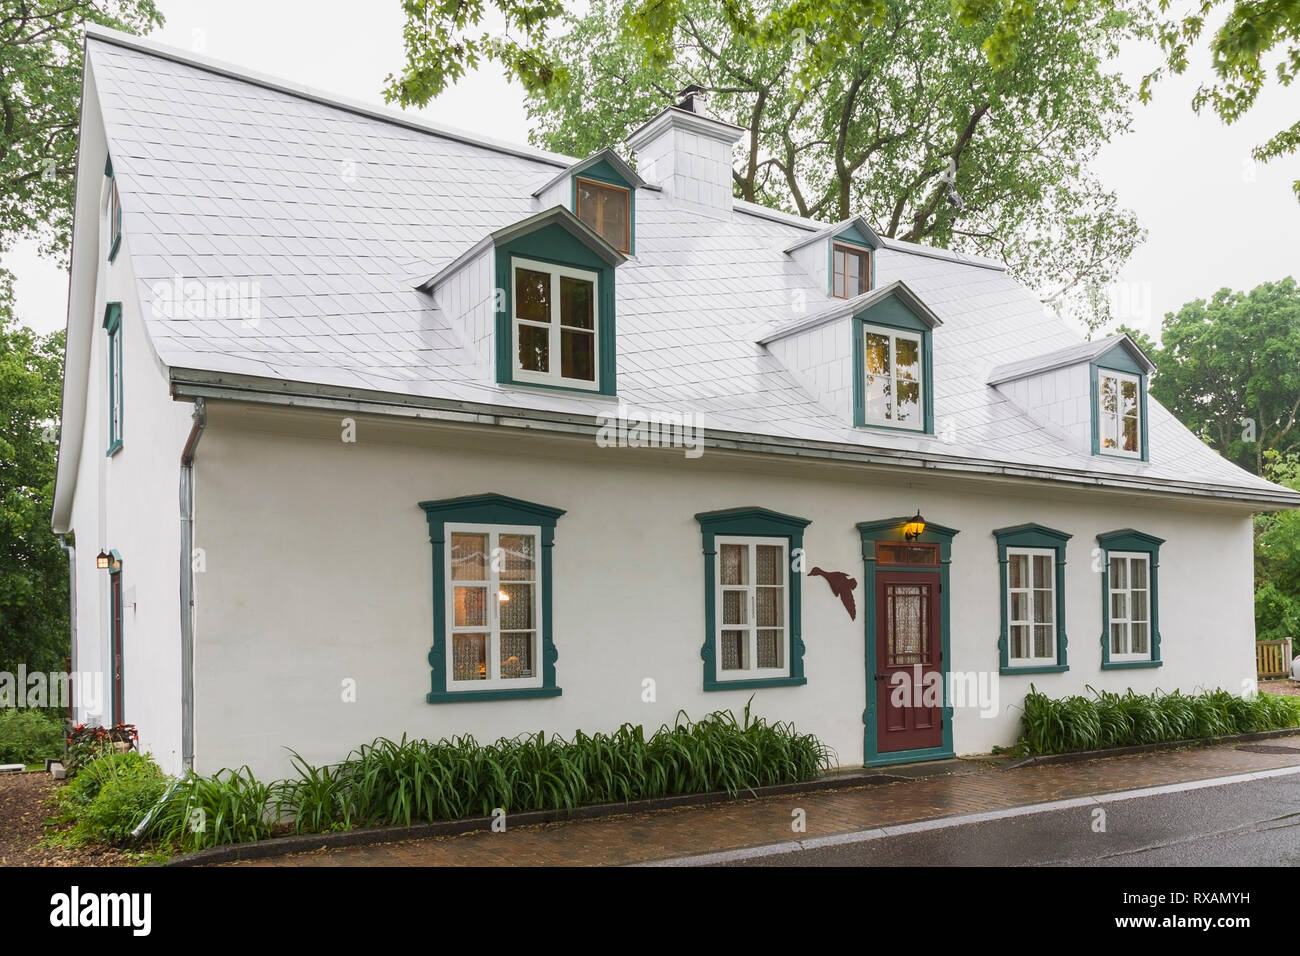 Beleuchtetes altes ca. 1805 weißes Raufußgemisch mit grünen und burgunderroten Zierleisten, Canadiana Cottage Stil Hausfassade im späten Frühjahr, Quebec, Kanada. Dieses Bild ist Eigentum freigegeben. CUPR0323 Stockfoto